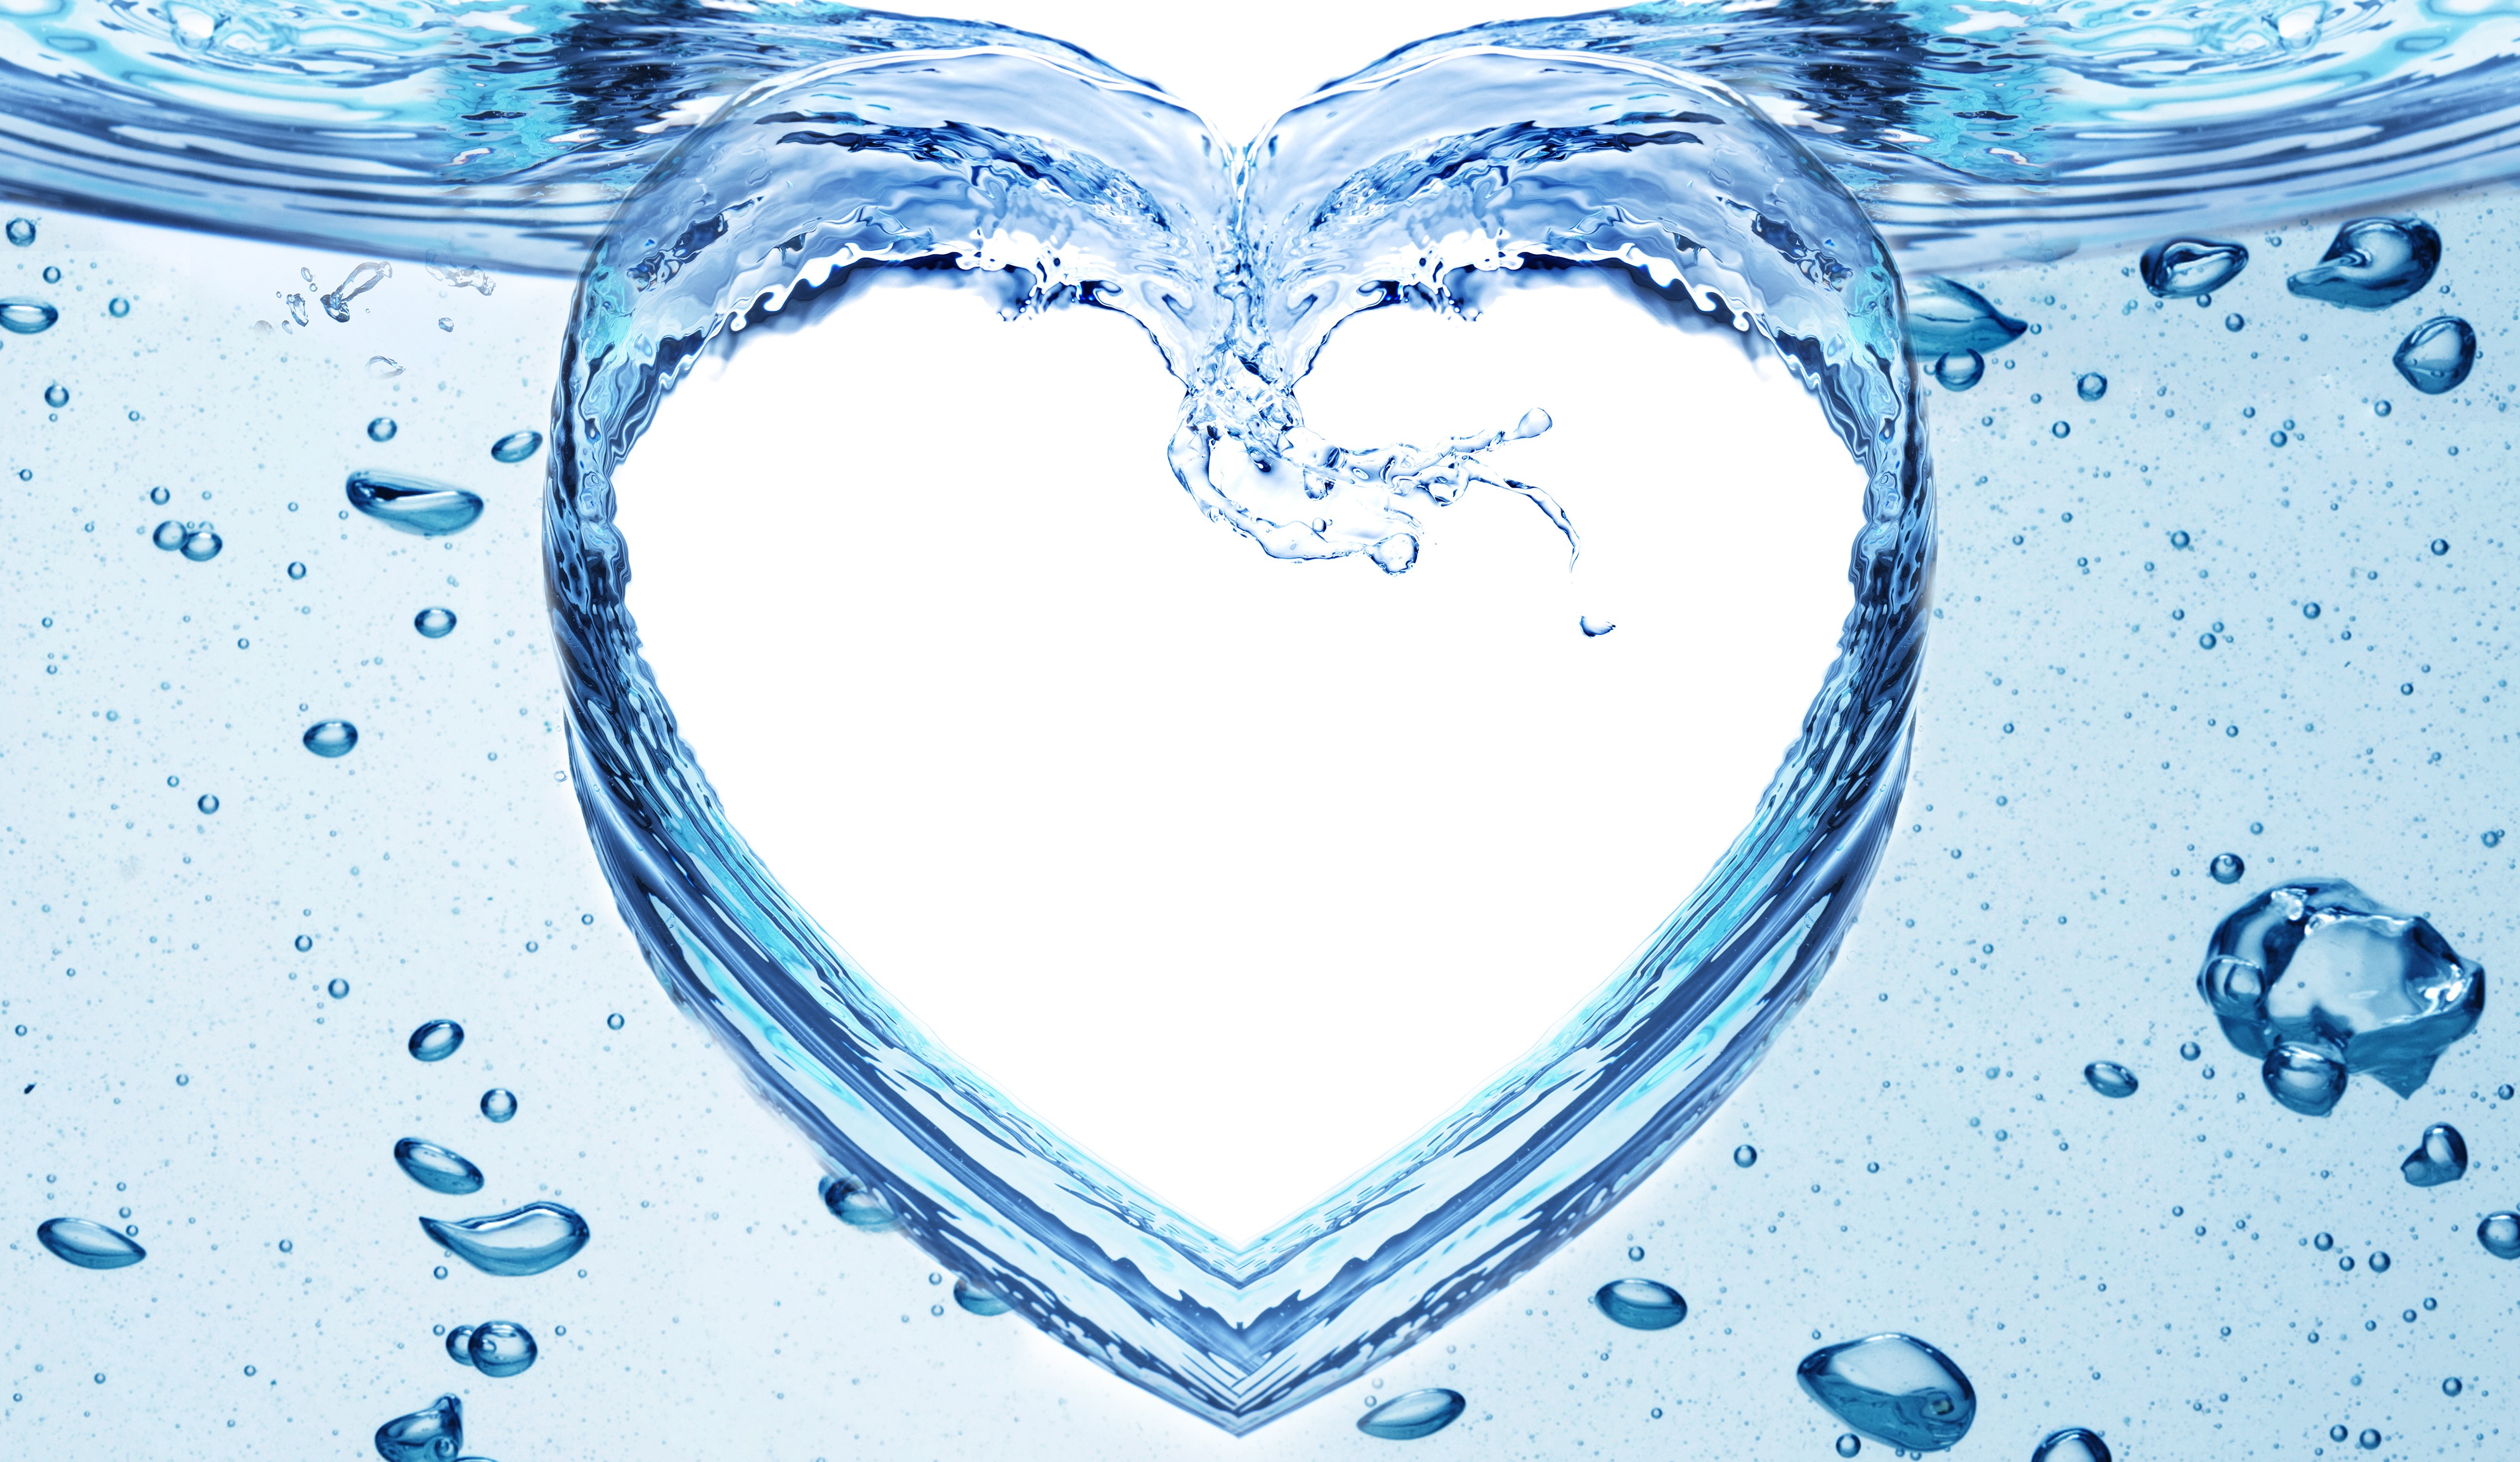 Скачать обои бесплатно Вода, Пузыри, Сердце, Художественные картинка на рабочий стол ПК